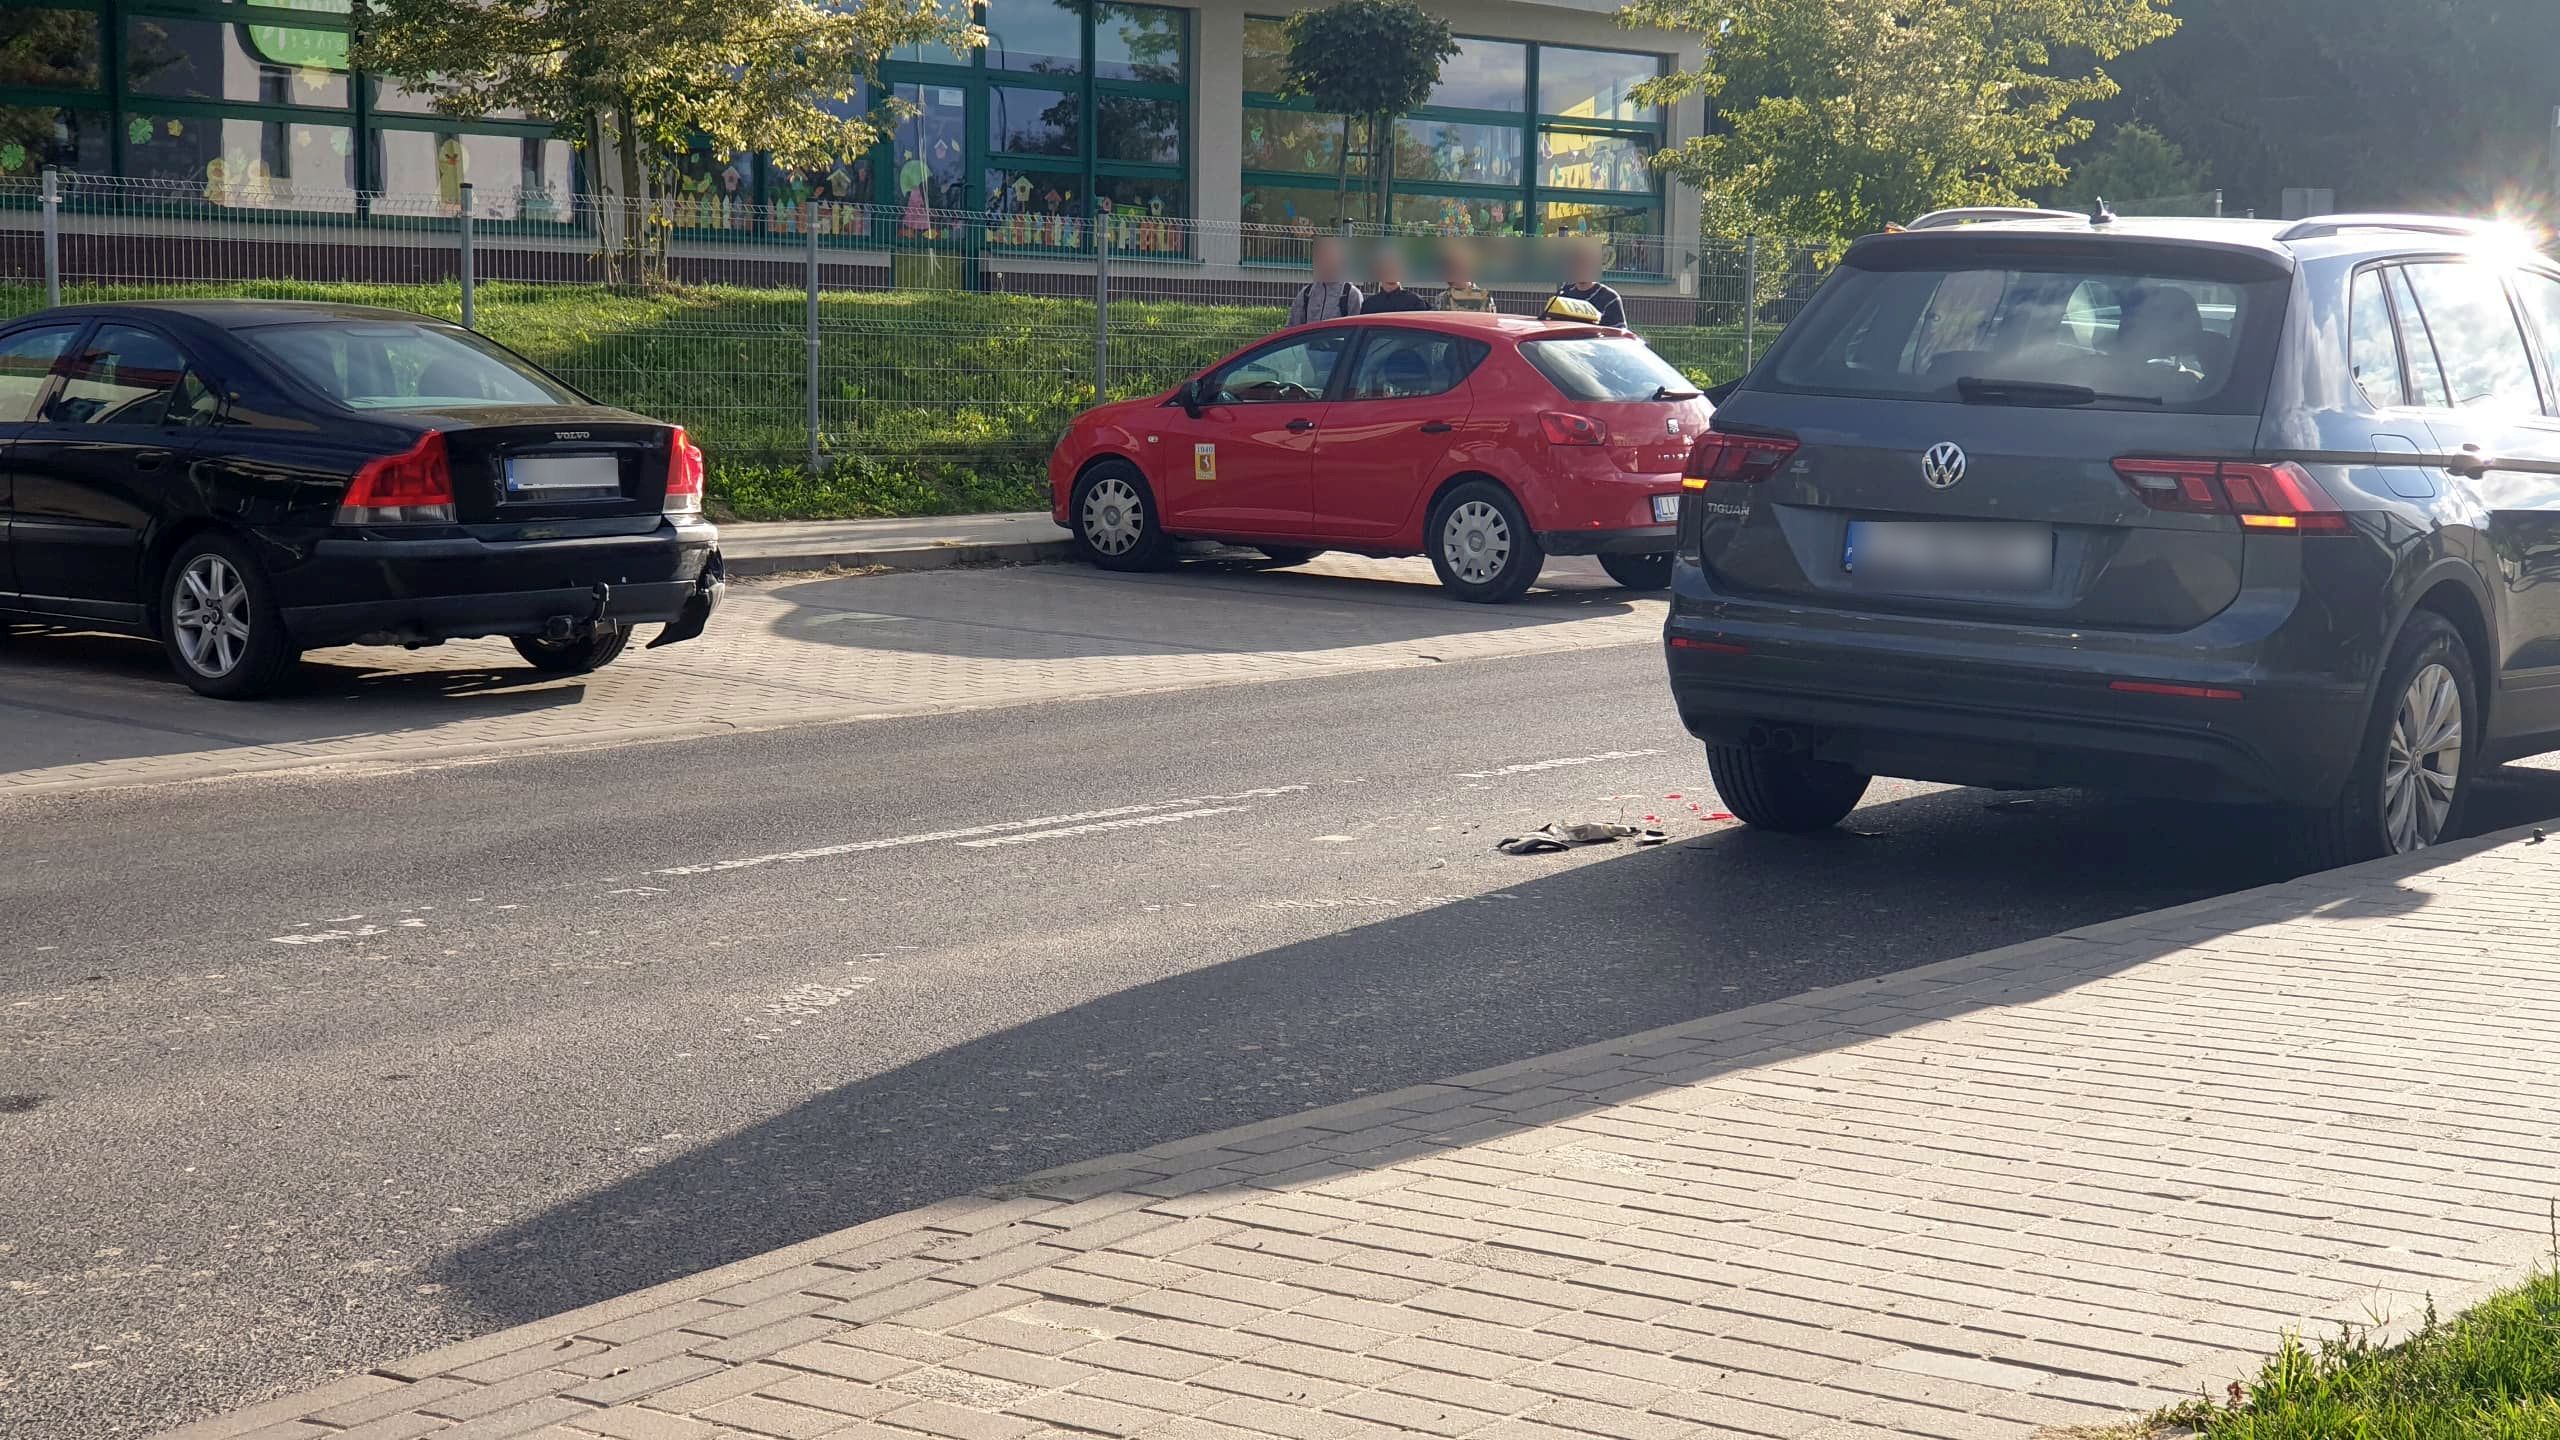 Ona wyjeżdżała z parkingu, on z miejsca parkingowego. Volvo zderzyło się z volkswagenem (zdjęcia)